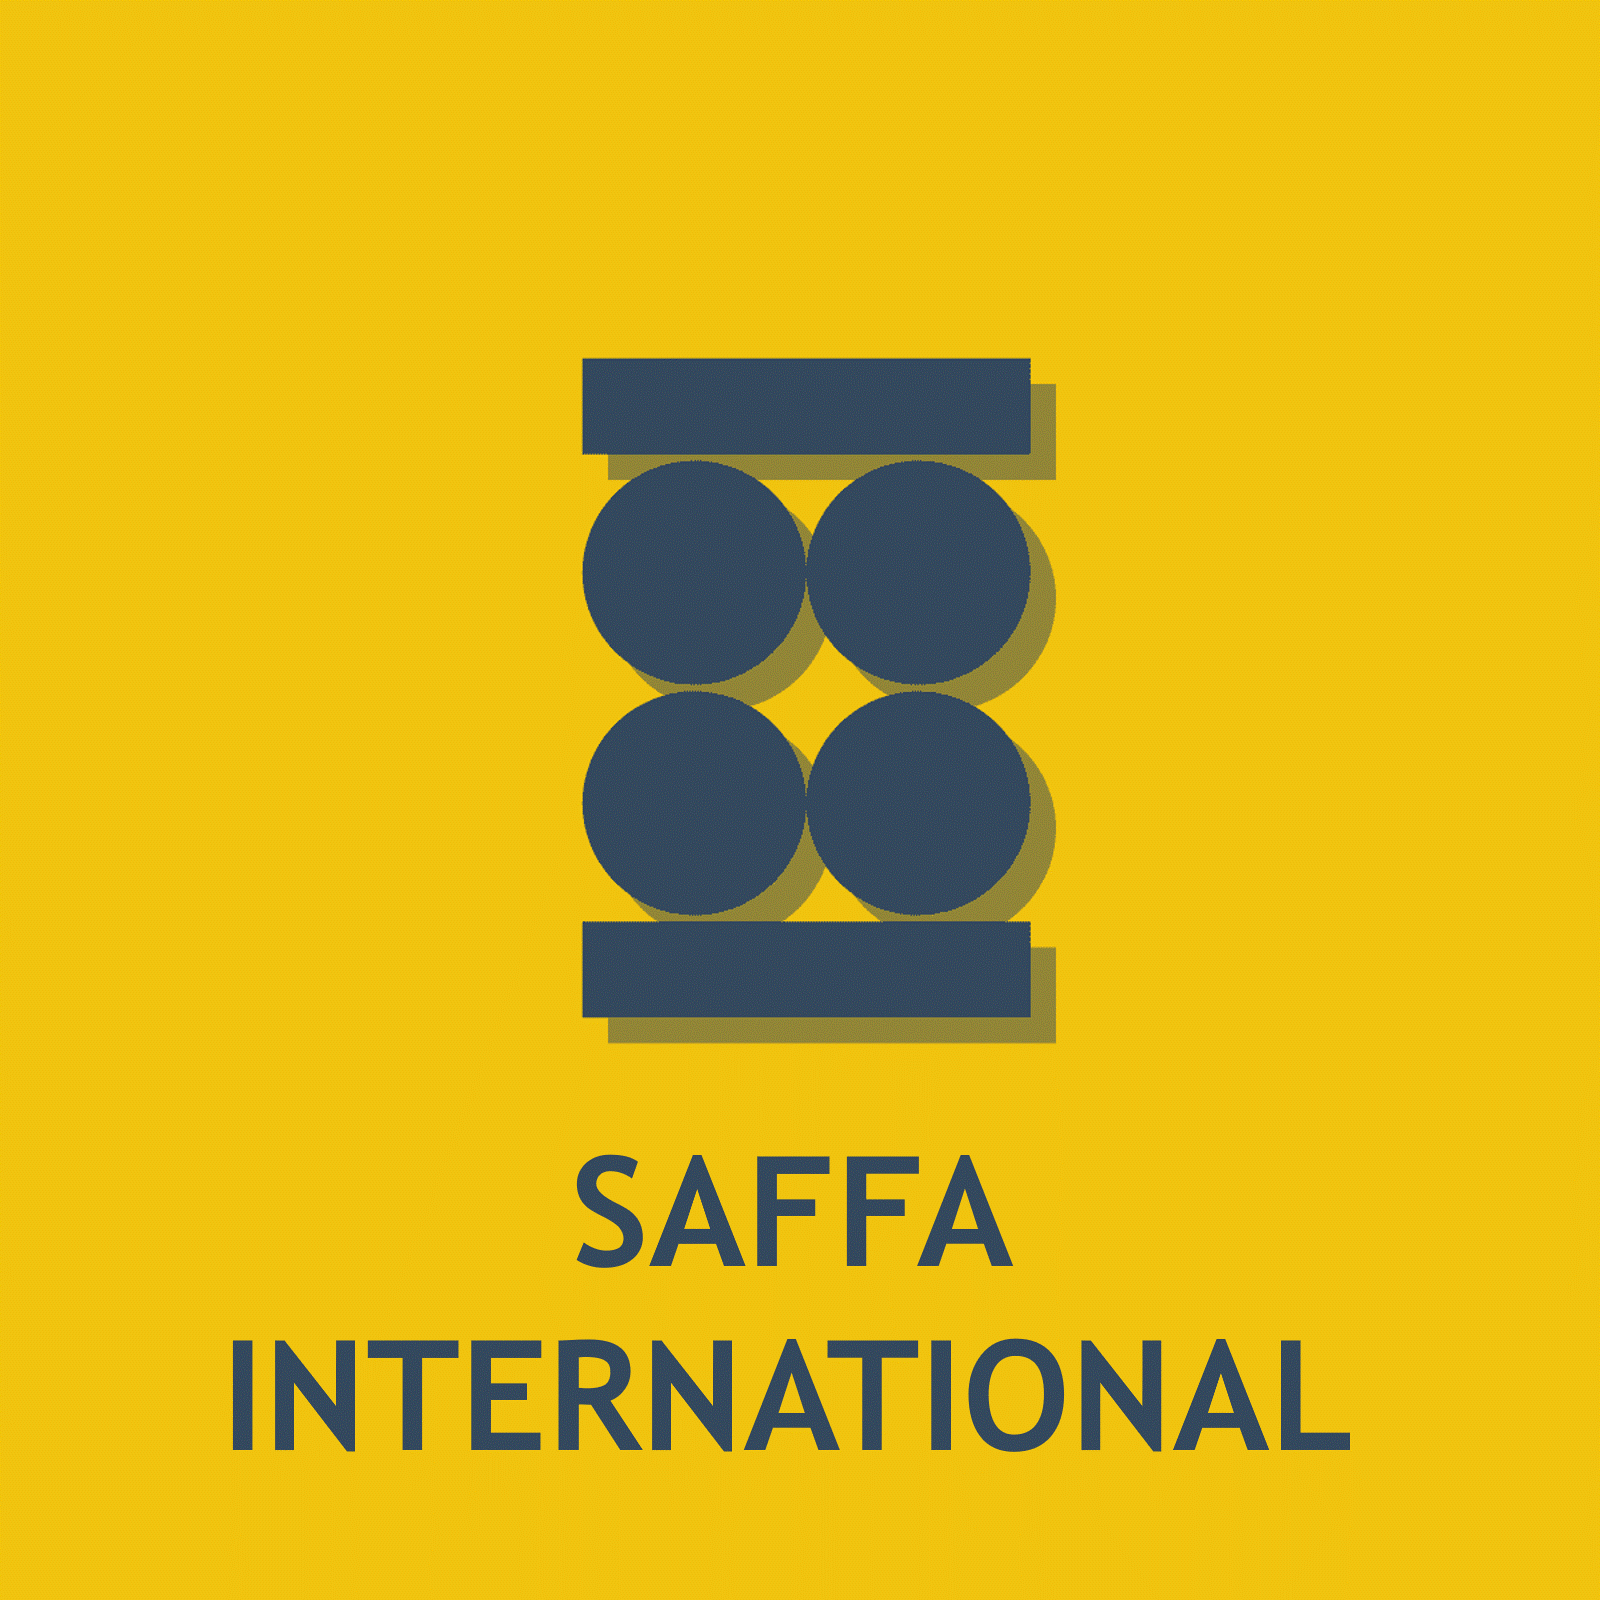 SAFFA INTERNATIONAL